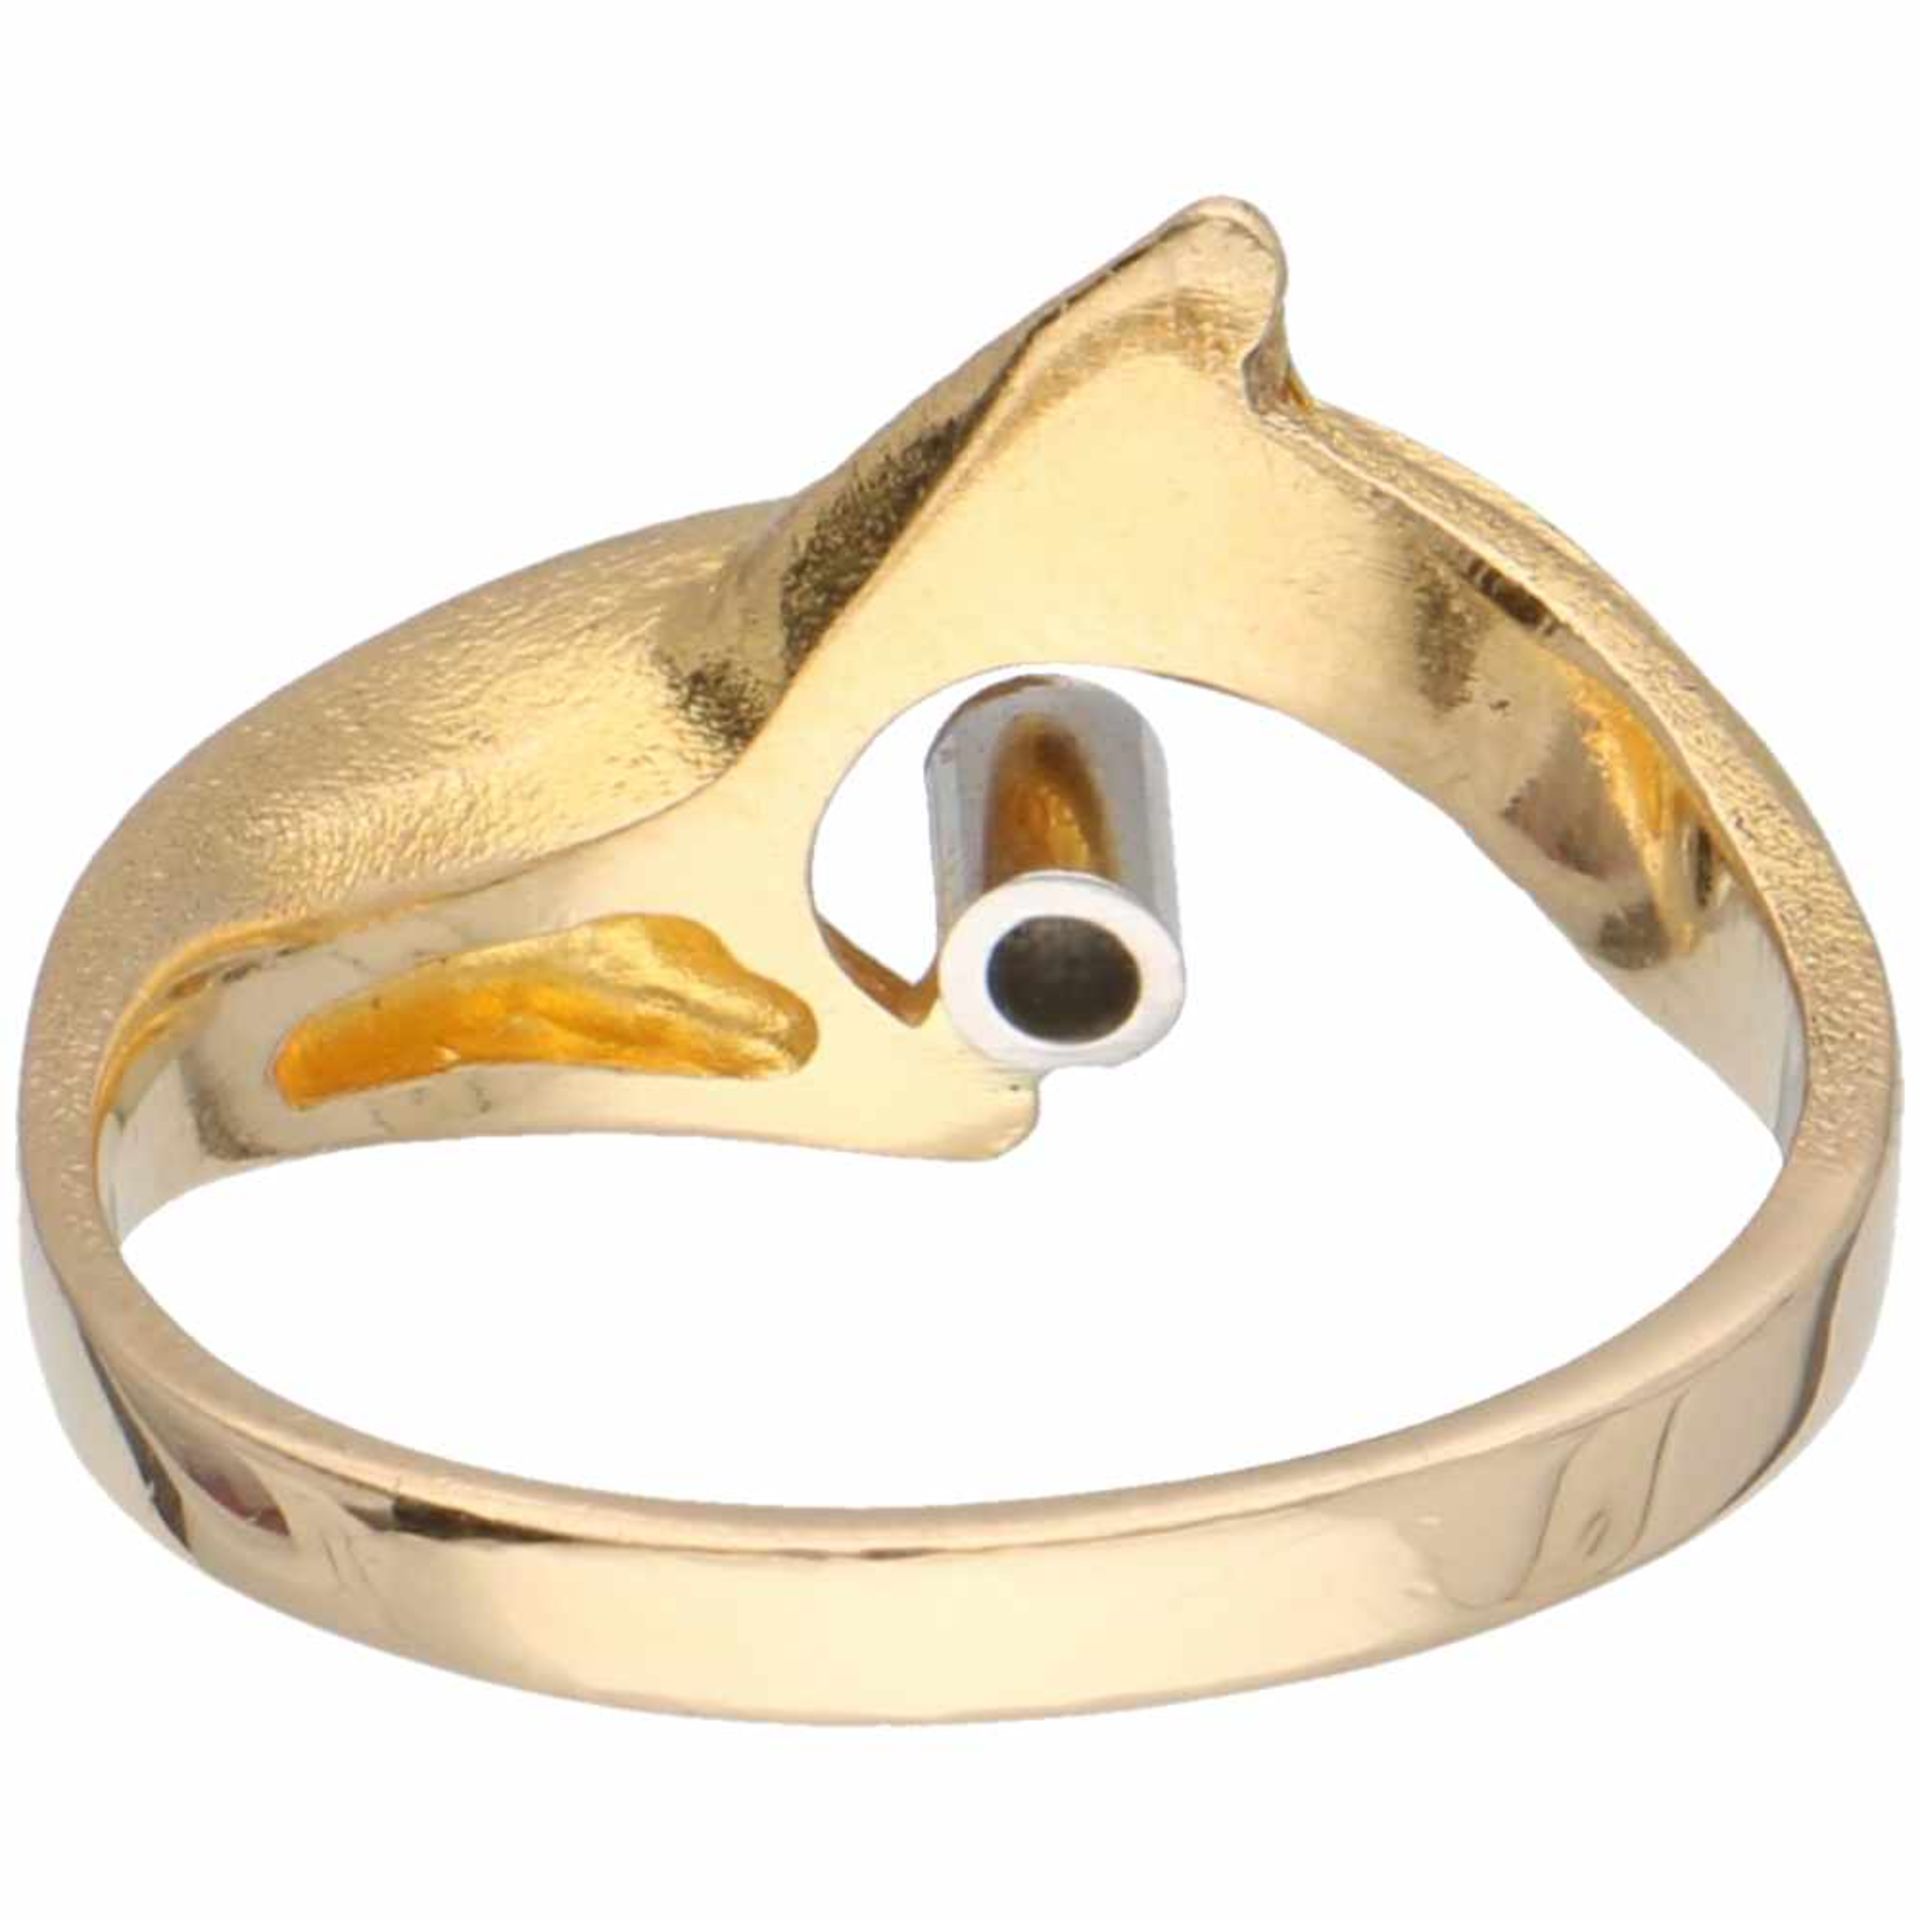 Geelgouden Lapponia ring, ca. 0.02 ct. diamant - 18 kt.1 Briljant geslepen diamant (ca. 0.02 ct.) in - Bild 3 aus 3